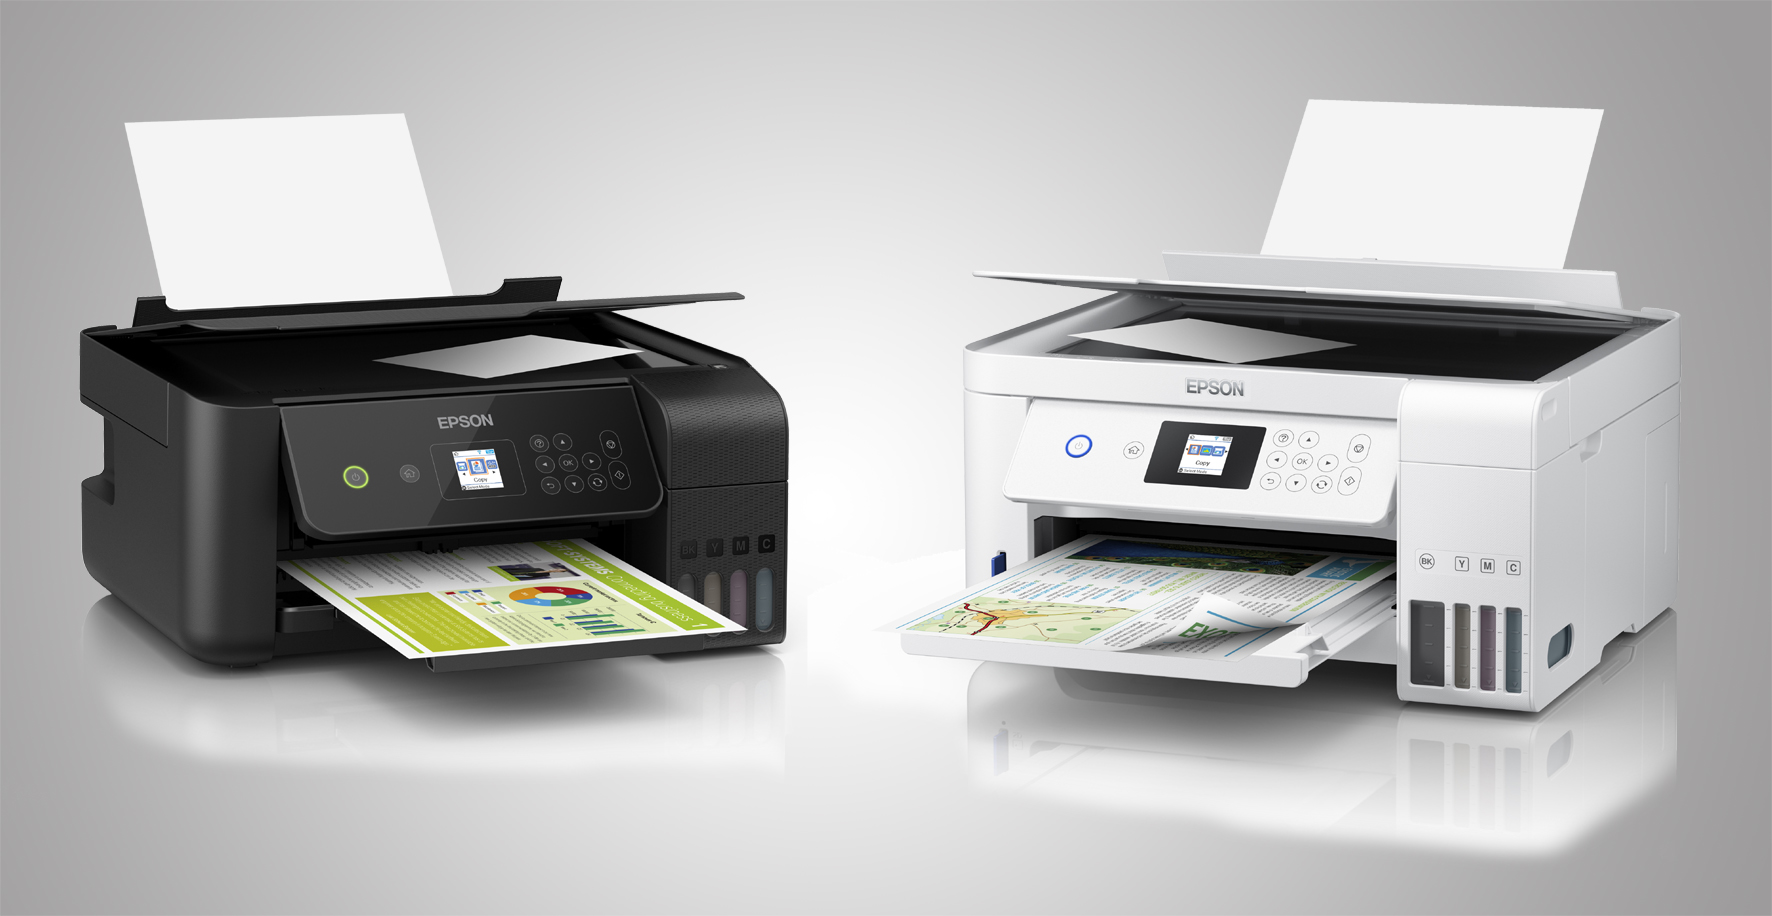 Le stampanti Epson EcoTank nel nuovo progetto trnd